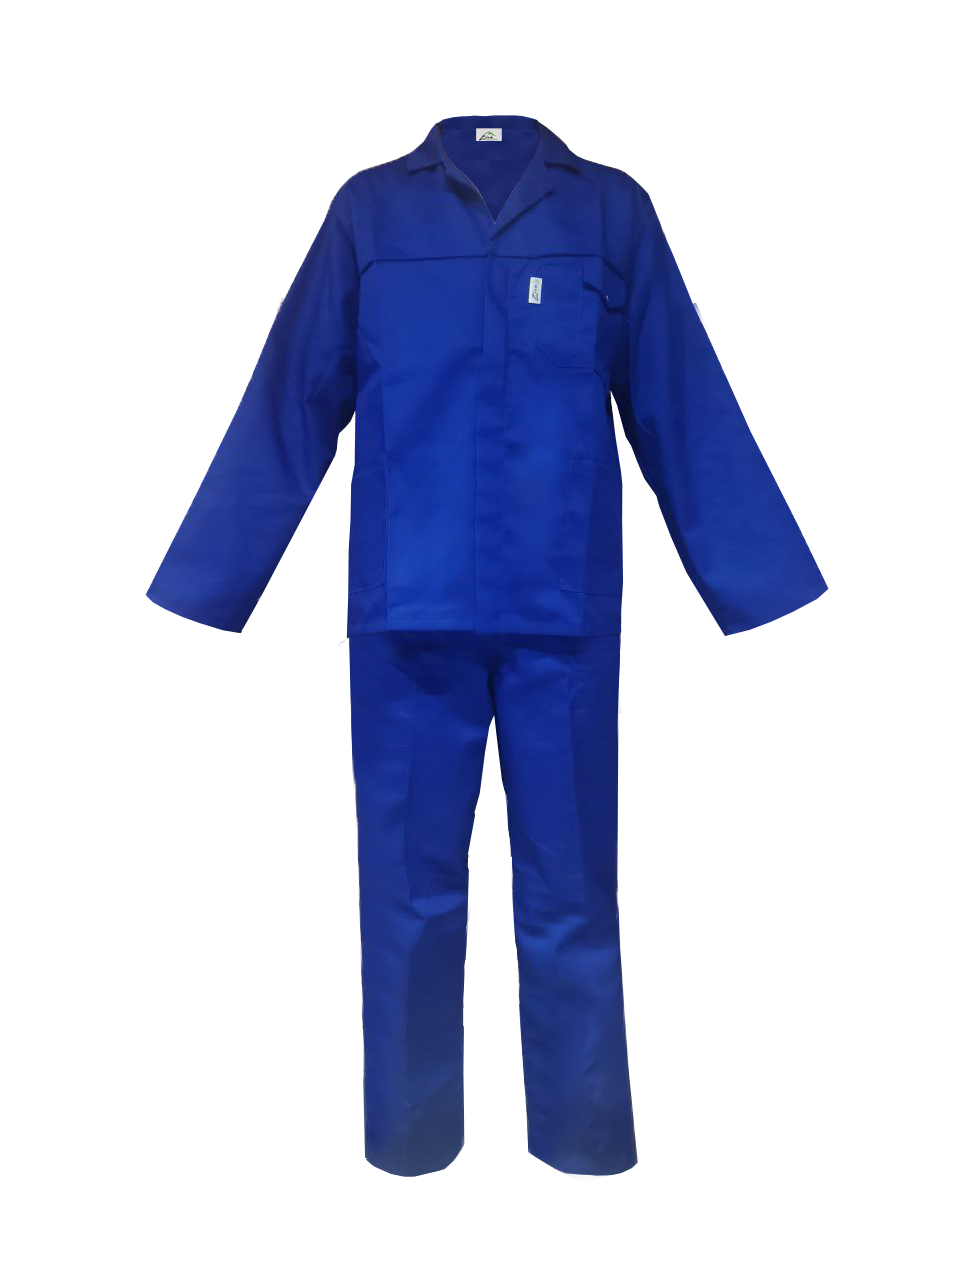 Zion Executive Polycotton Conti Suit